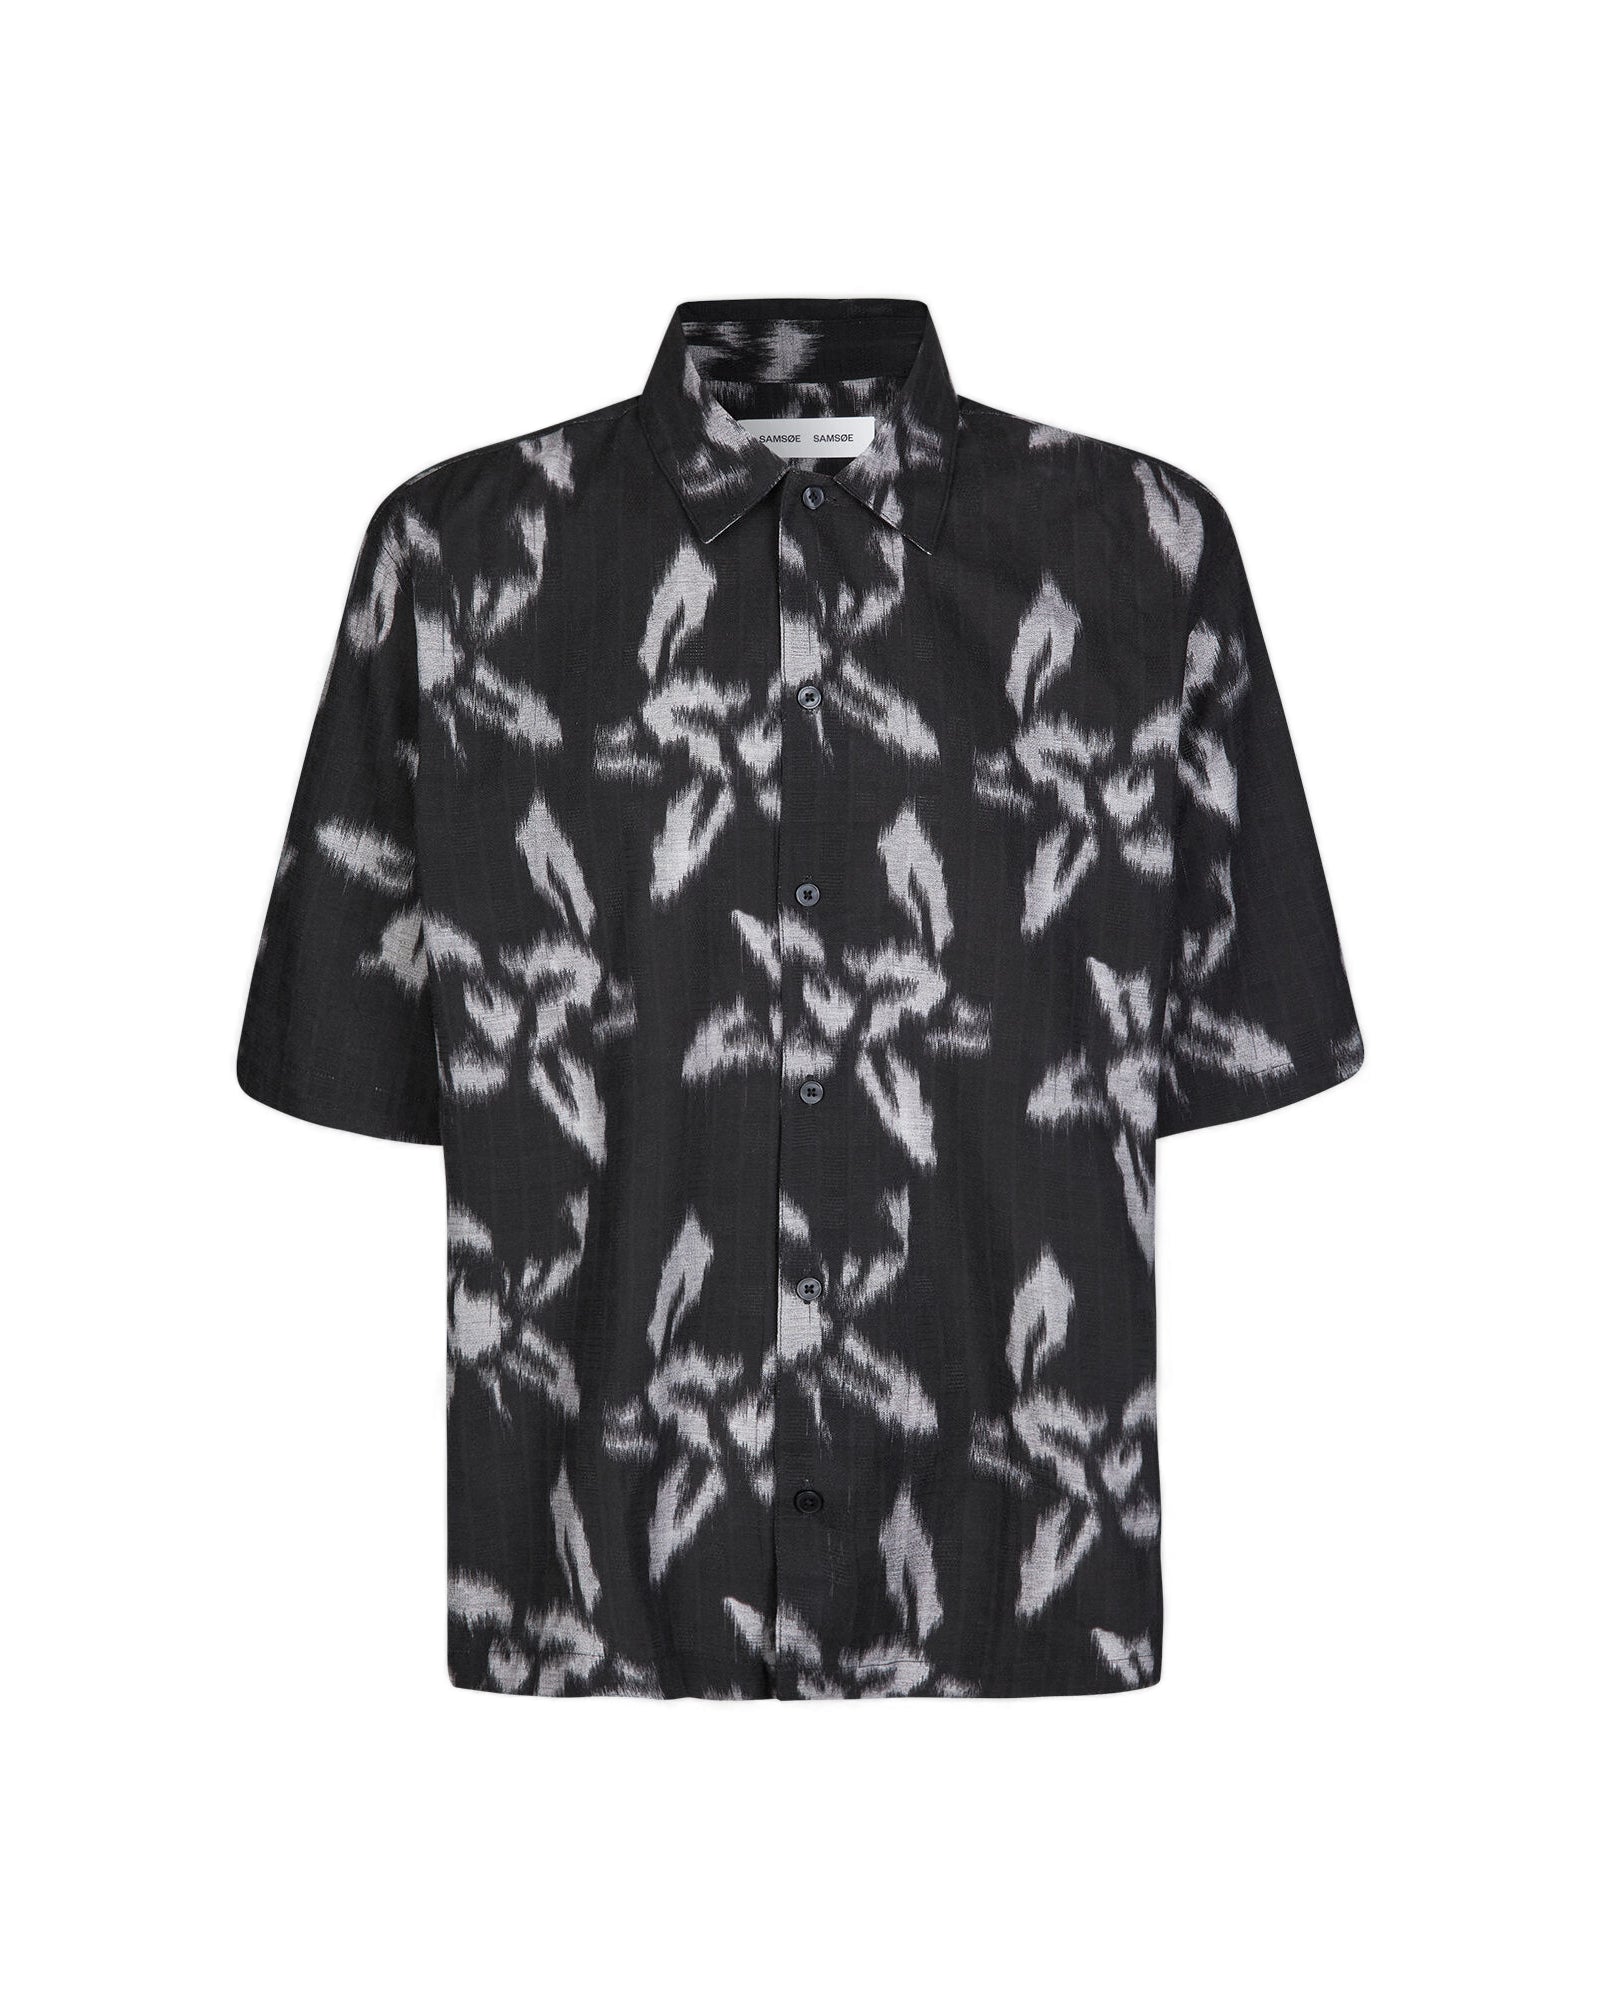 Saayo X 15142 Shirt - Orchid Moonstruck